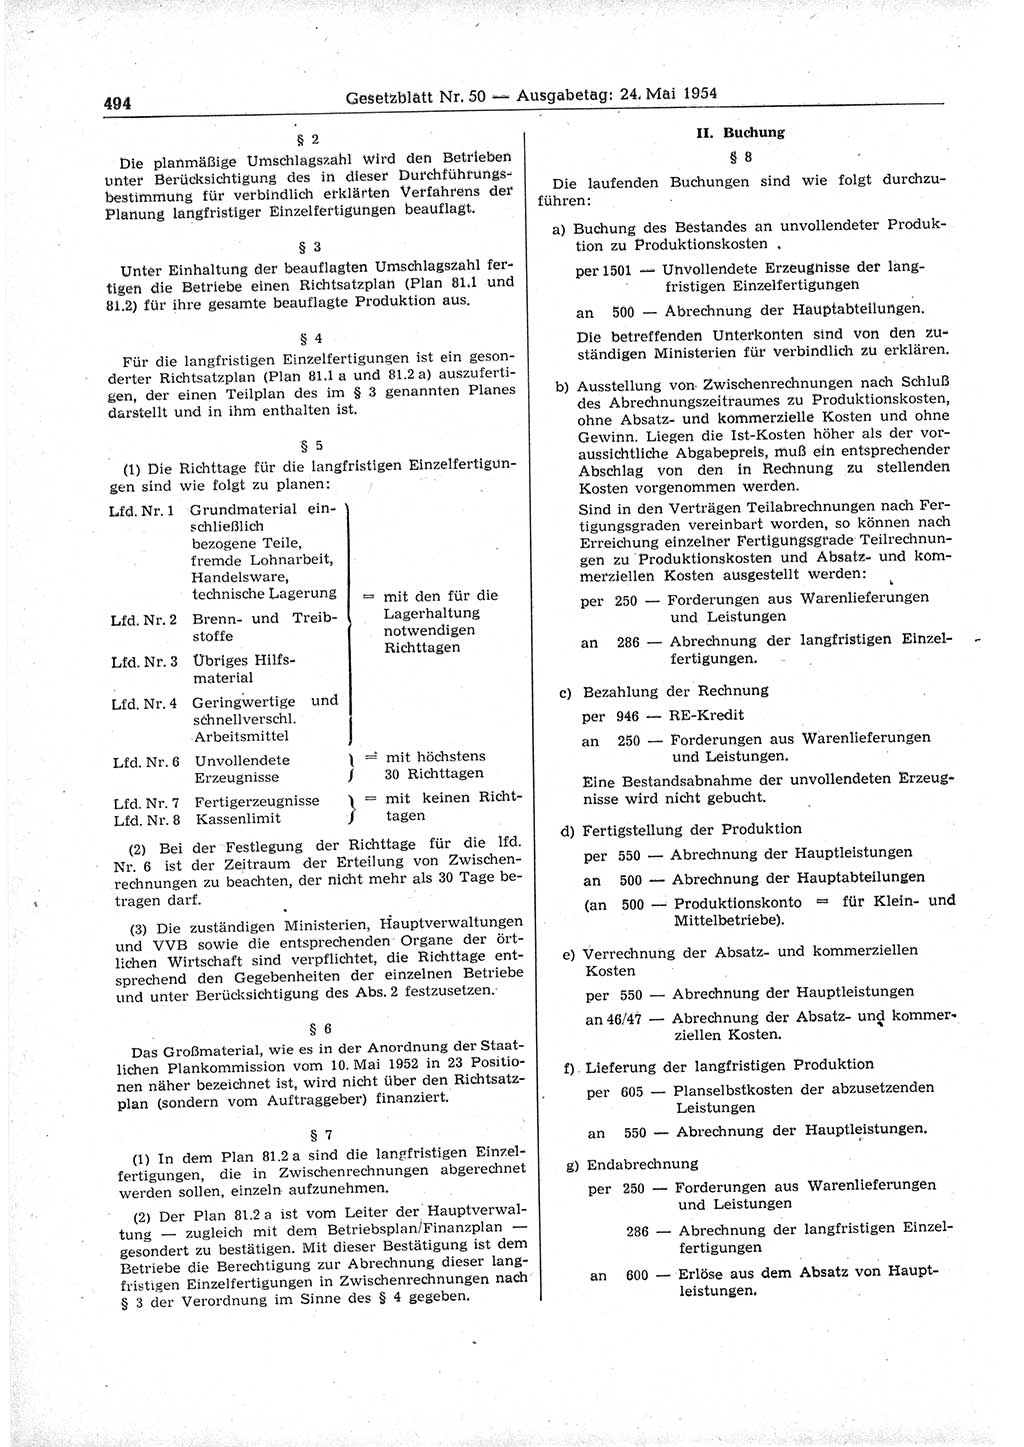 Gesetzblatt (GBl.) der Deutschen Demokratischen Republik (DDR) 1954, Seite 494 (GBl. DDR 1954, S. 494)